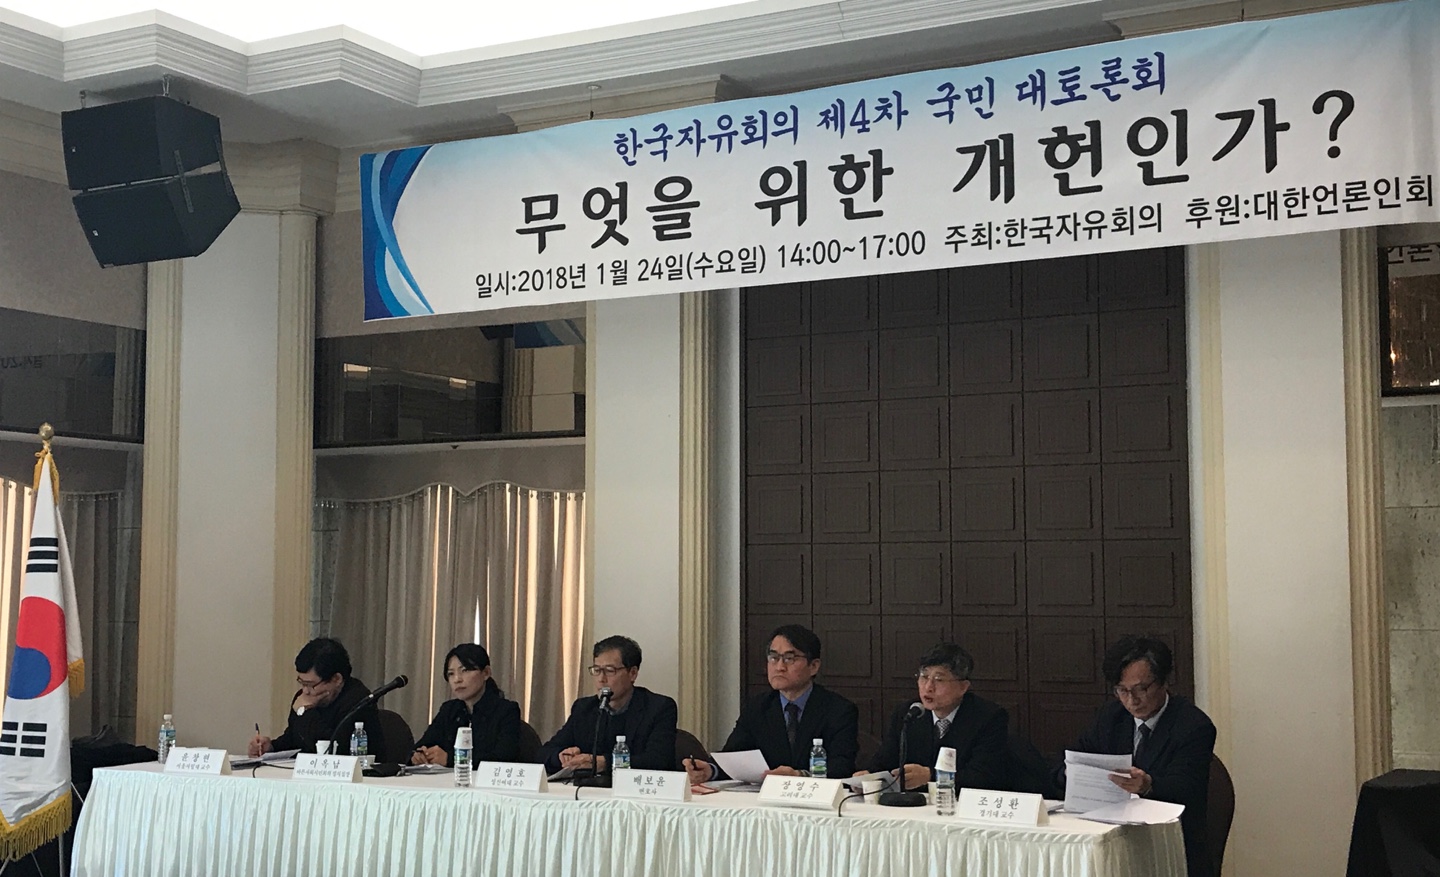 24일 오후 서울 중국 프레스센터에서 한국자유회의 주최로 열리는 '무엇을 위한 개헌인가' 주제 토론회가 진행되고 있다. ⓒ데일리안 조현의 기자